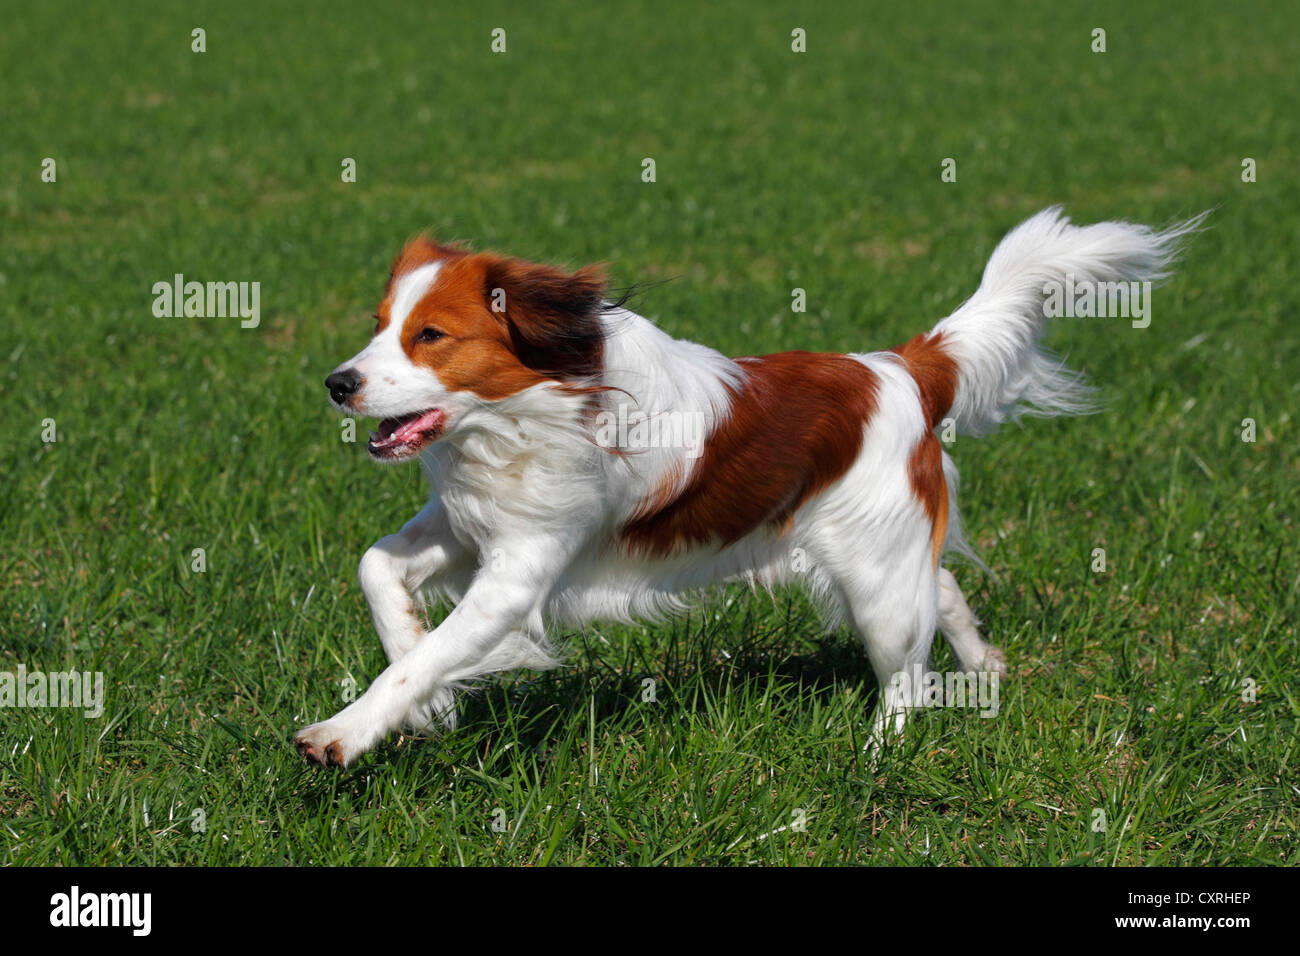 Kooikerhondje ou Kooiker Hound (Canis lupus familiaris), jeune mâle chien qui court à travers un pré Banque D'Images